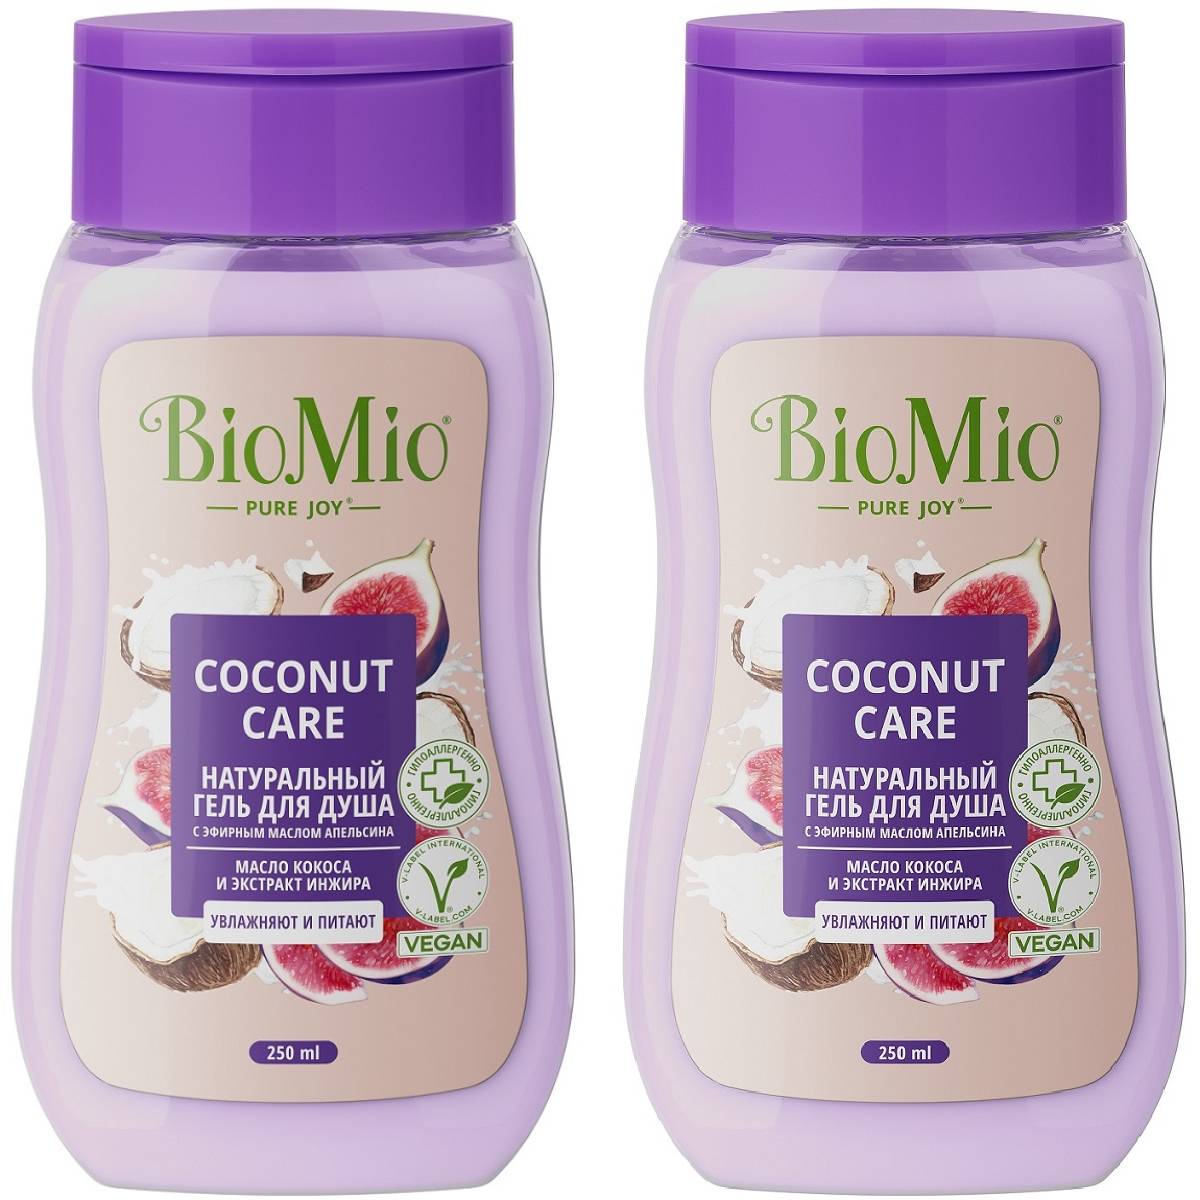 BioMio Biomio Гель для душа с экстрактом инжира и маслом кокоса Coconut Care для всей семьи 14+, 2 х 250 мл (BioMio, Для ванны и душа) ухаживающий крем гель для душа для нормальной и сухой кожи caring